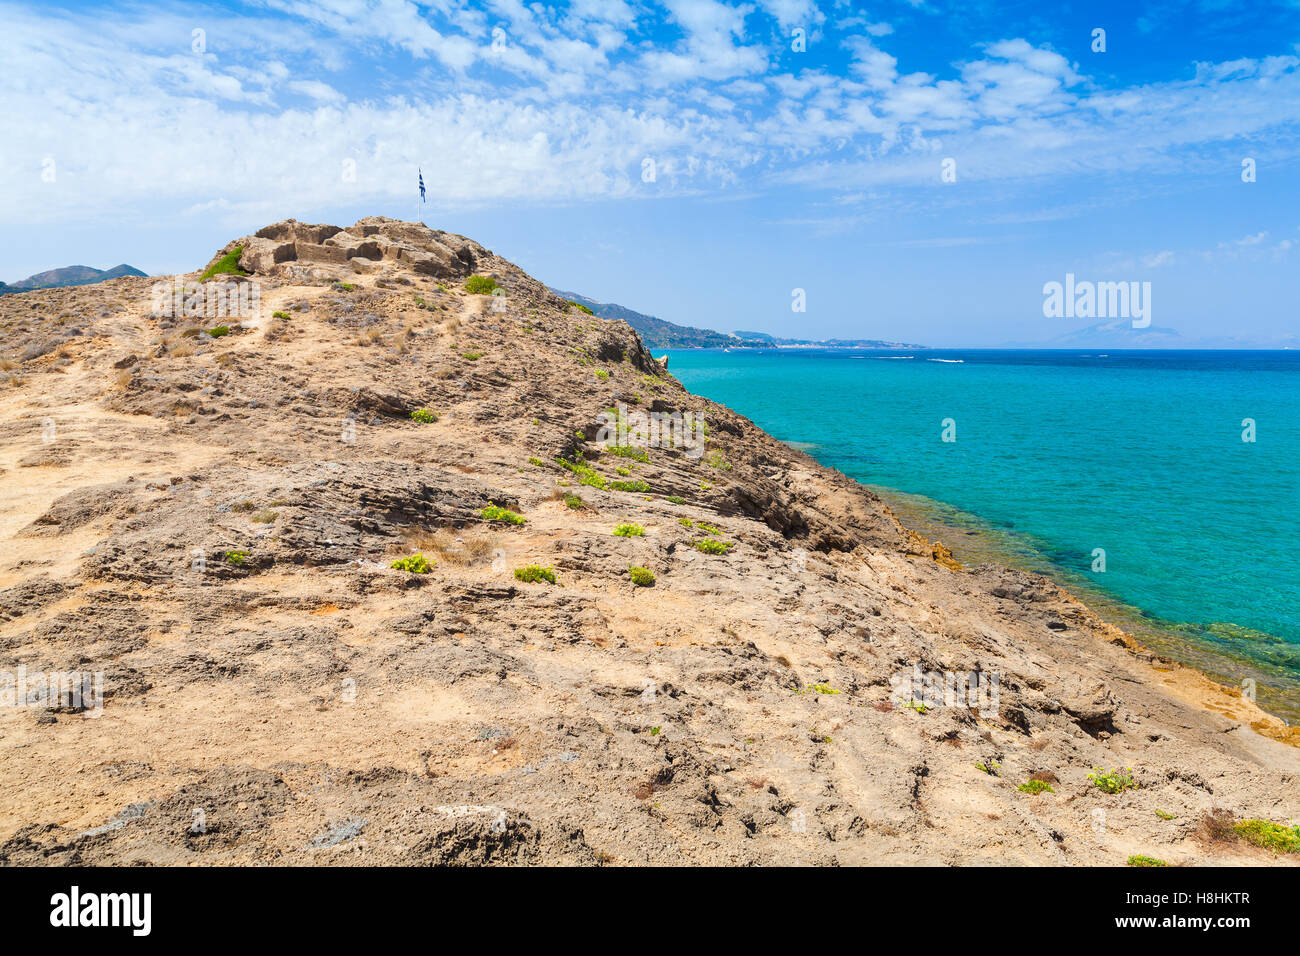 Côte rocheuse de l'île de Zakynthos, Grèce. Destination touristique populaire pour l'été vacances Banque D'Images